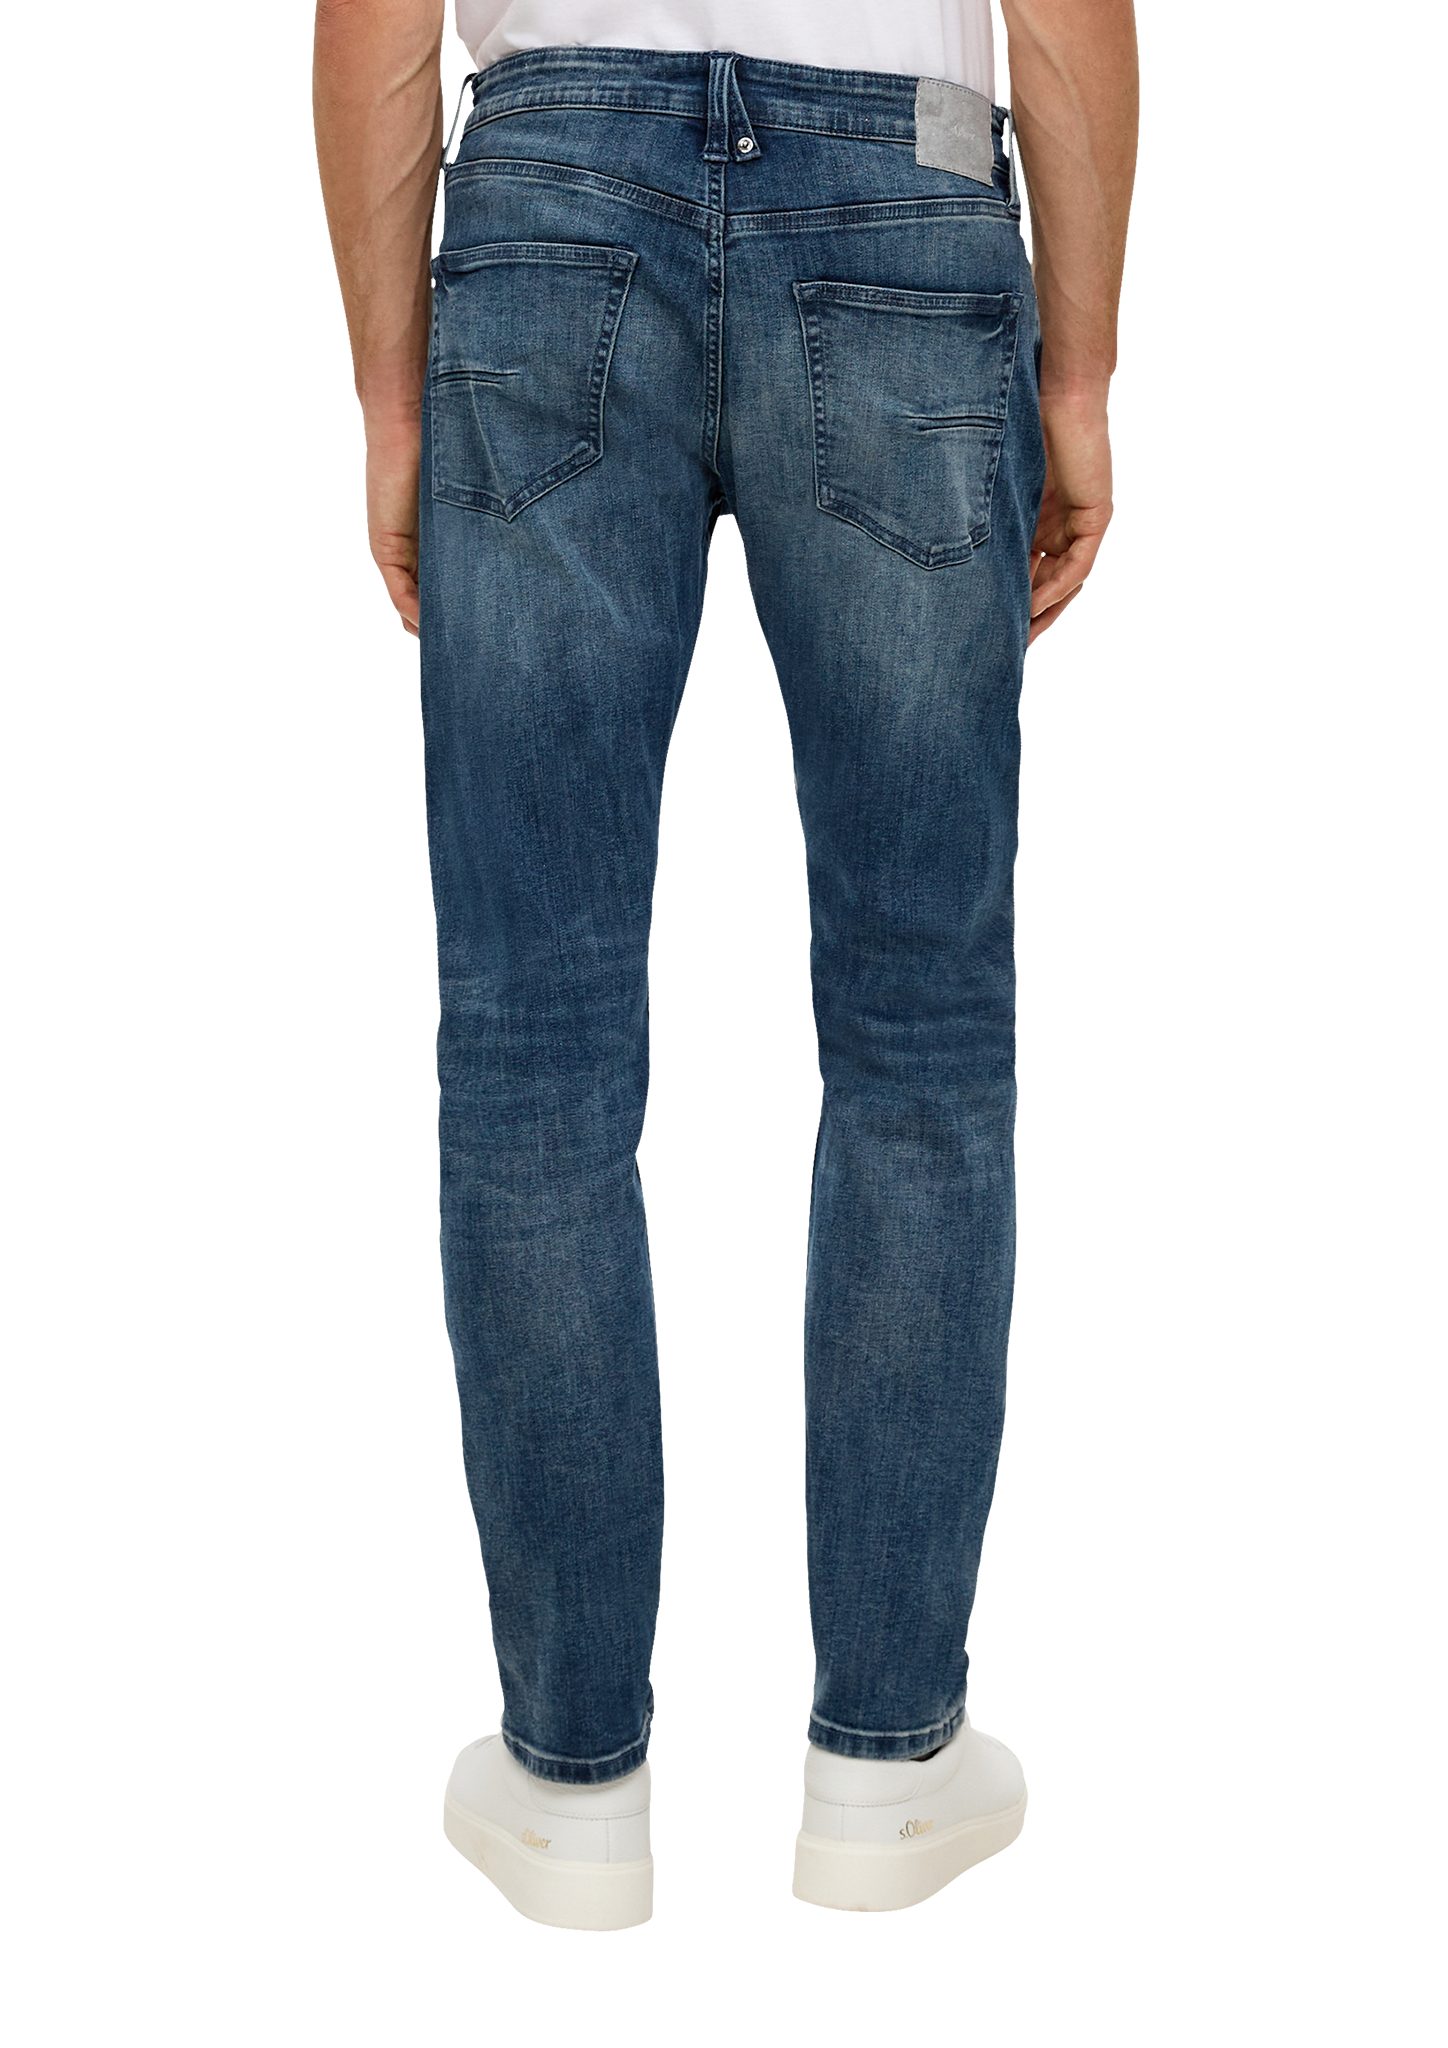 / / 5-Pocket-Stil s.Oliver Fit / Leg Mid Rise / dunkelblau Tapered Jeans Leder-Patch, Regular Waschung Stoffhose